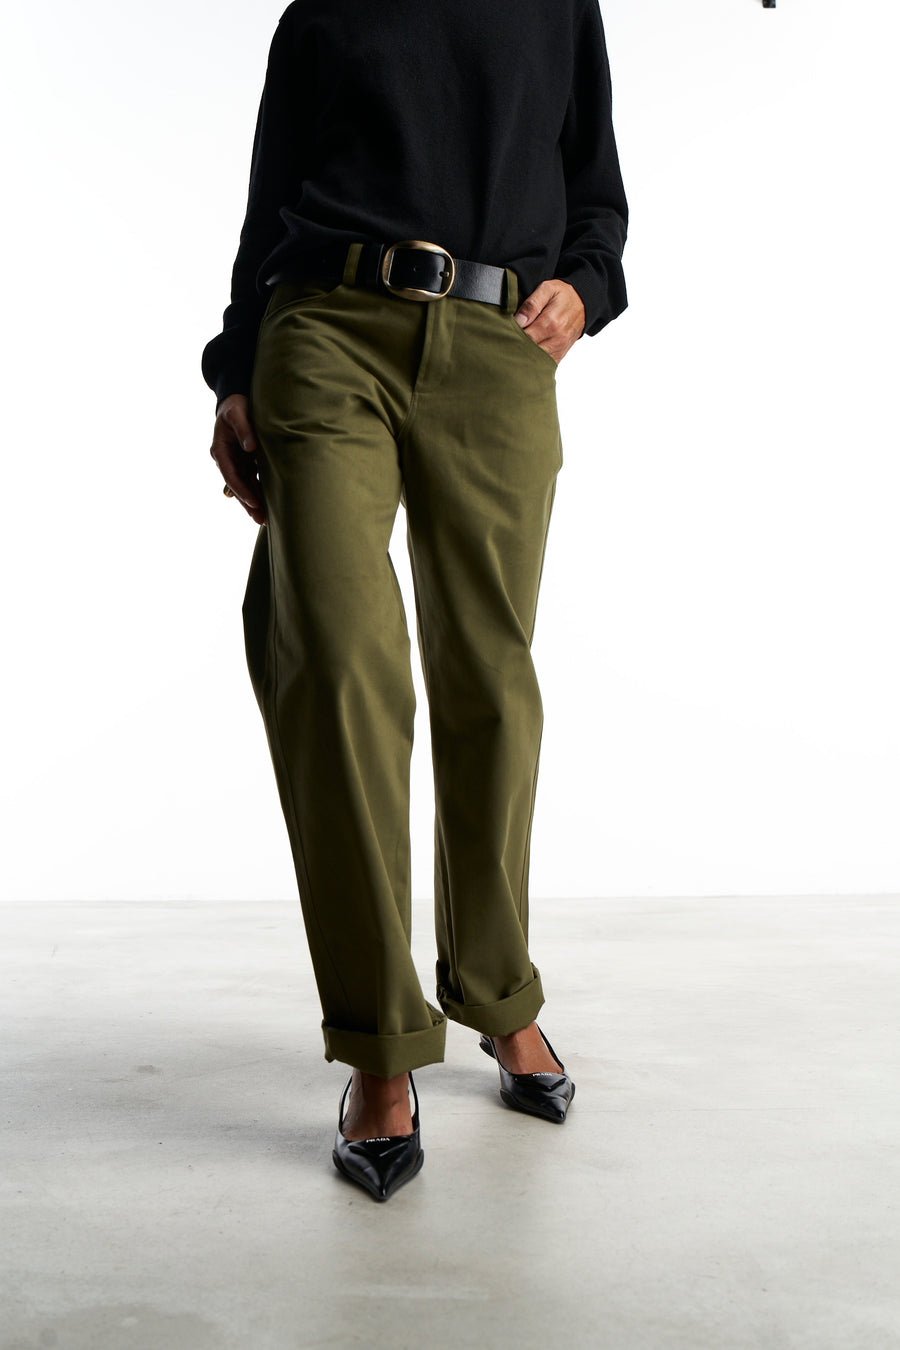 Pantalone Lucia |  Fustagno Verde Alloro